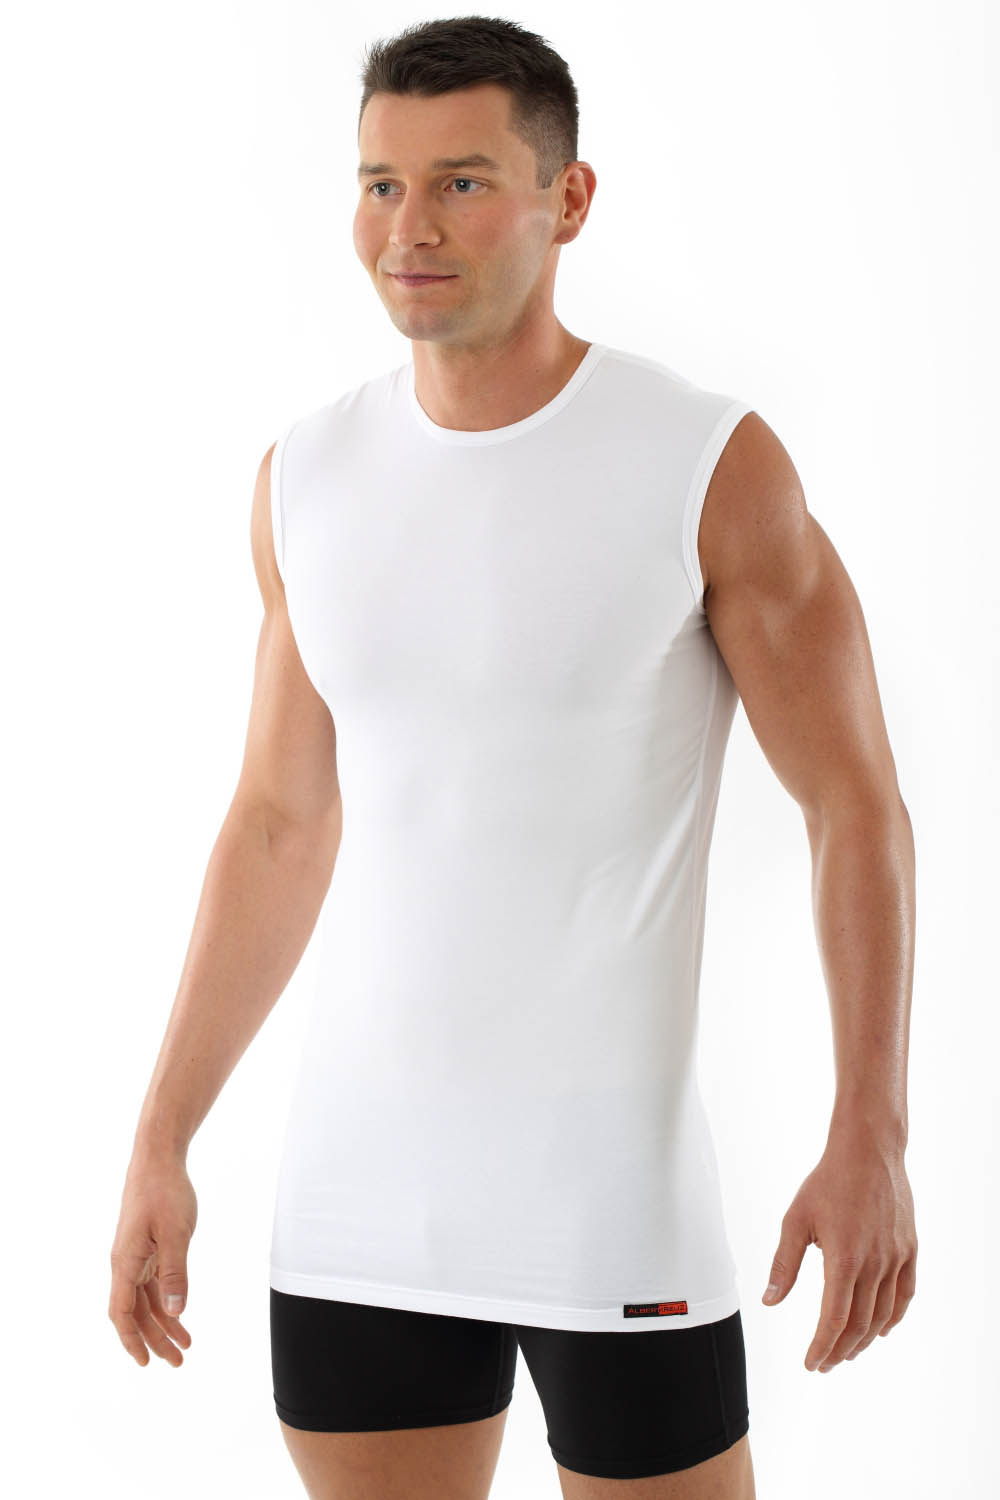 ALBERT KREUZ  Men's MicroModal sleeveless undershirt Stuttgart light  deep v-neck white